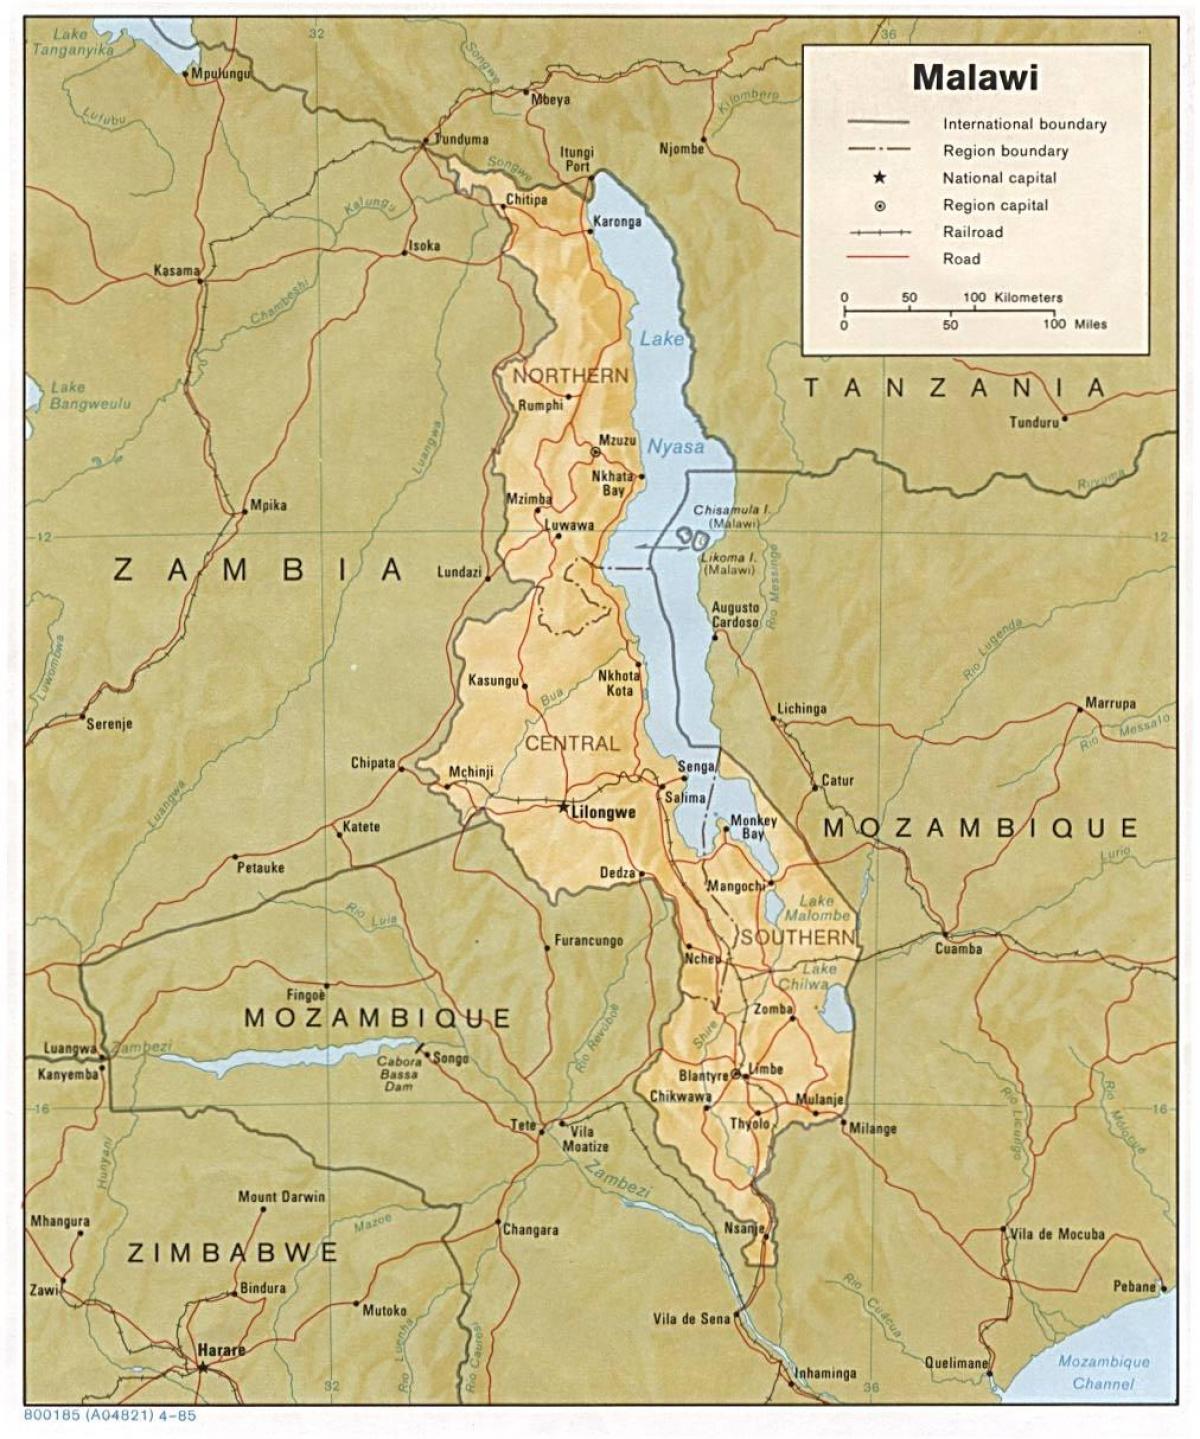 მალავის ტბის რუკაზე